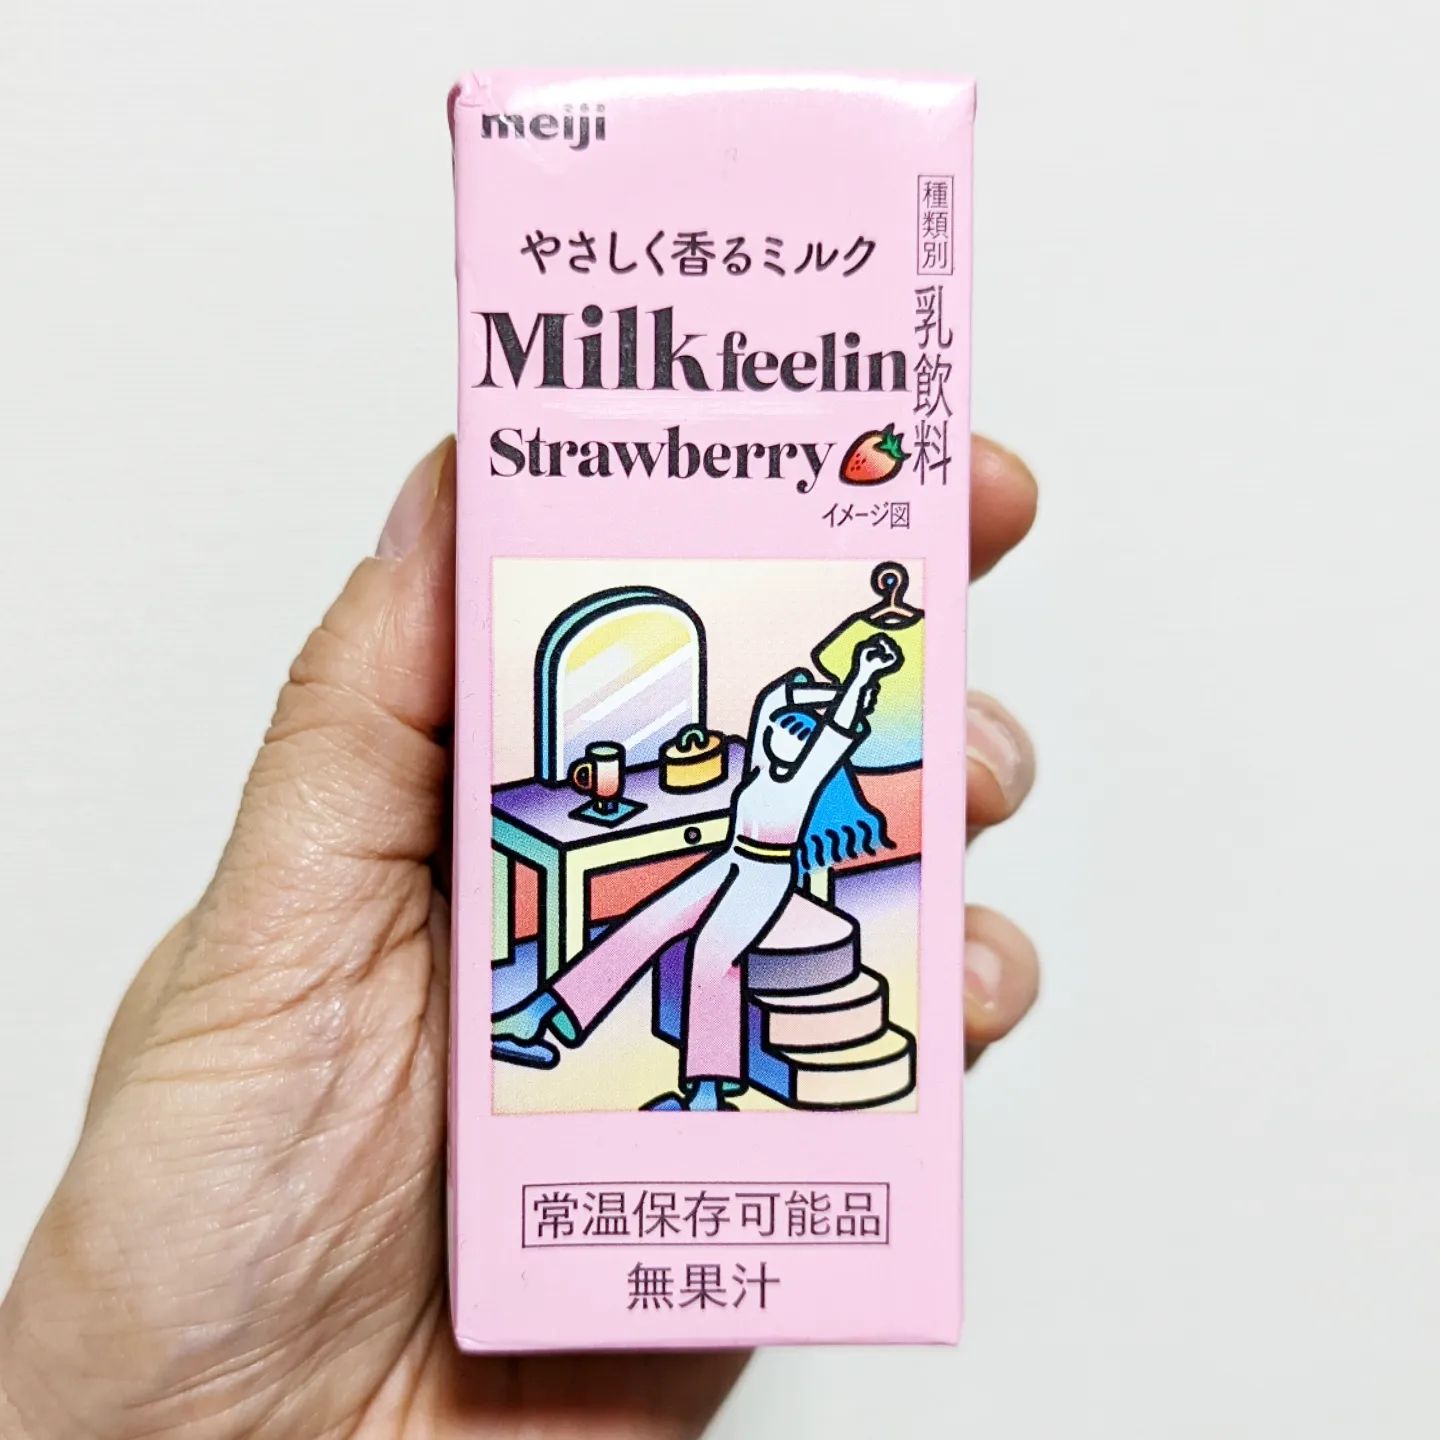 #いちごミルクラブ #ミルクフィーリンストロベリー #明治 謎イチゴ系－－☆－－本物イチゴ系甘さ強め系－－☆－－控え目系こってり系－－☆－－さっぱり系超ミルク系－－☆－－生クリーム系おもいで度－－☆－－ #侍猫度比較的甘さ控えめで謎苺ミルク感のある仕上りとなっております。一般の方には飲みやすい甘さでございますね！おかしのまちおかで買ったやつでございます。※更新遅くてすみません！ただいま別アカウント更新強化中です。→武蔵小山のグルメ情報〜侍猫の気まぐれ風〜@musashikoyama.news#いちごオレ #いちごオレ味 #いちごミルク #いちごミルクみたい #いちご牛乳 #いちご牛乳味 #イチゴ牛乳 #いちご牛乳クラブ #苺牛乳 #苺牛乳が好き #苺ミルク #苺スイーツ #苺 #苺好きに生まれたからには #メソギア派 #糖分 #いちごミルク味 #スイーツ #スイーツ好き #スイーツスタグラム #スイーツタイム #スイーツ写真 #strawberry #strawberrymilk